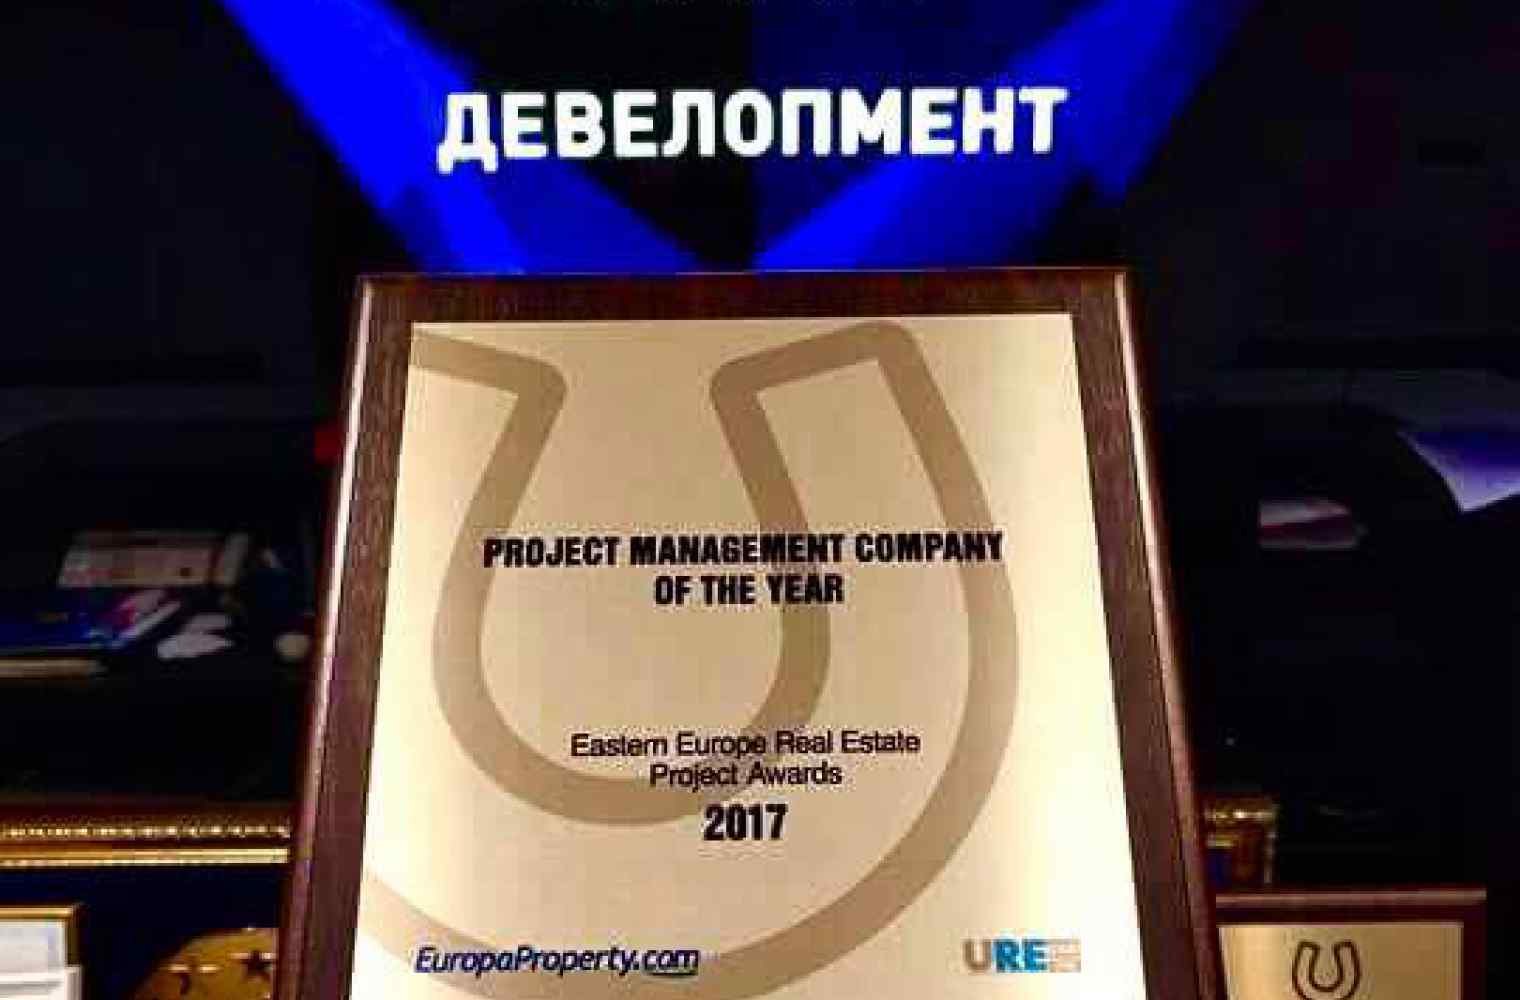 KAN Development признана лучшей компанией года по версии EEA Real Estate Forum & Project Awards